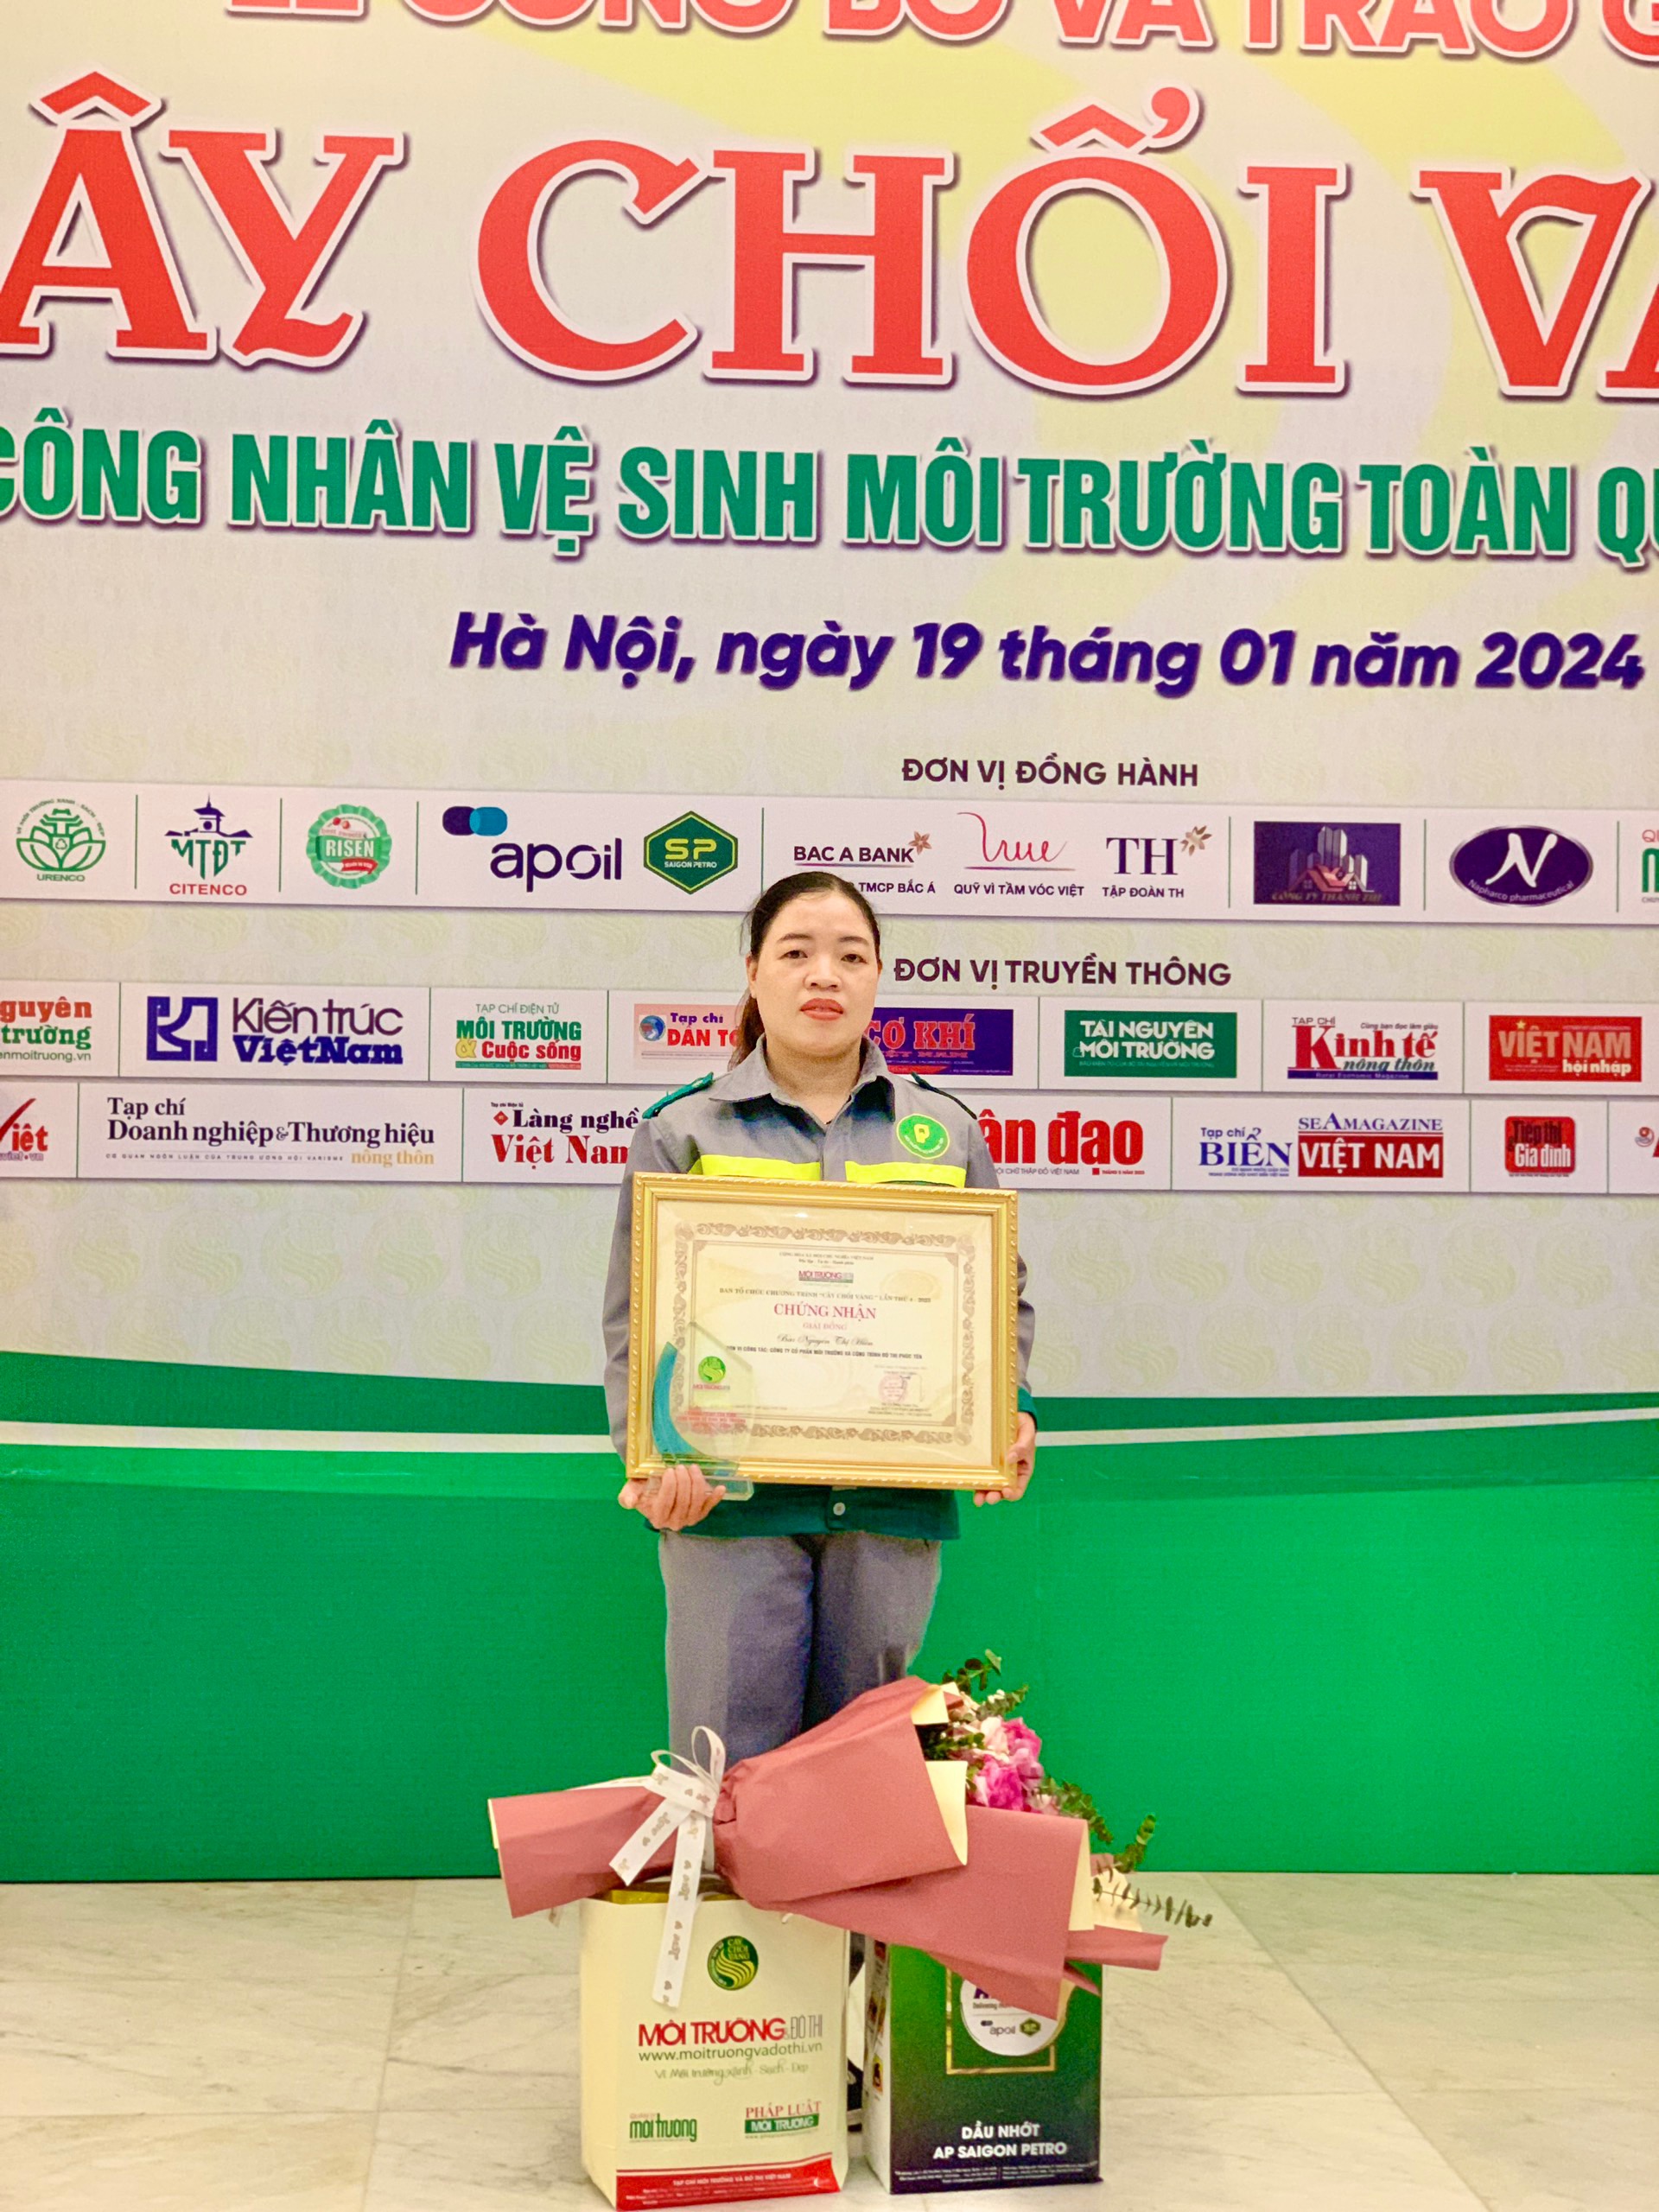 Gặp gỡ chủ nhân giải thưởng “Cây chổi vàng” Nguyễn Thị Hiền